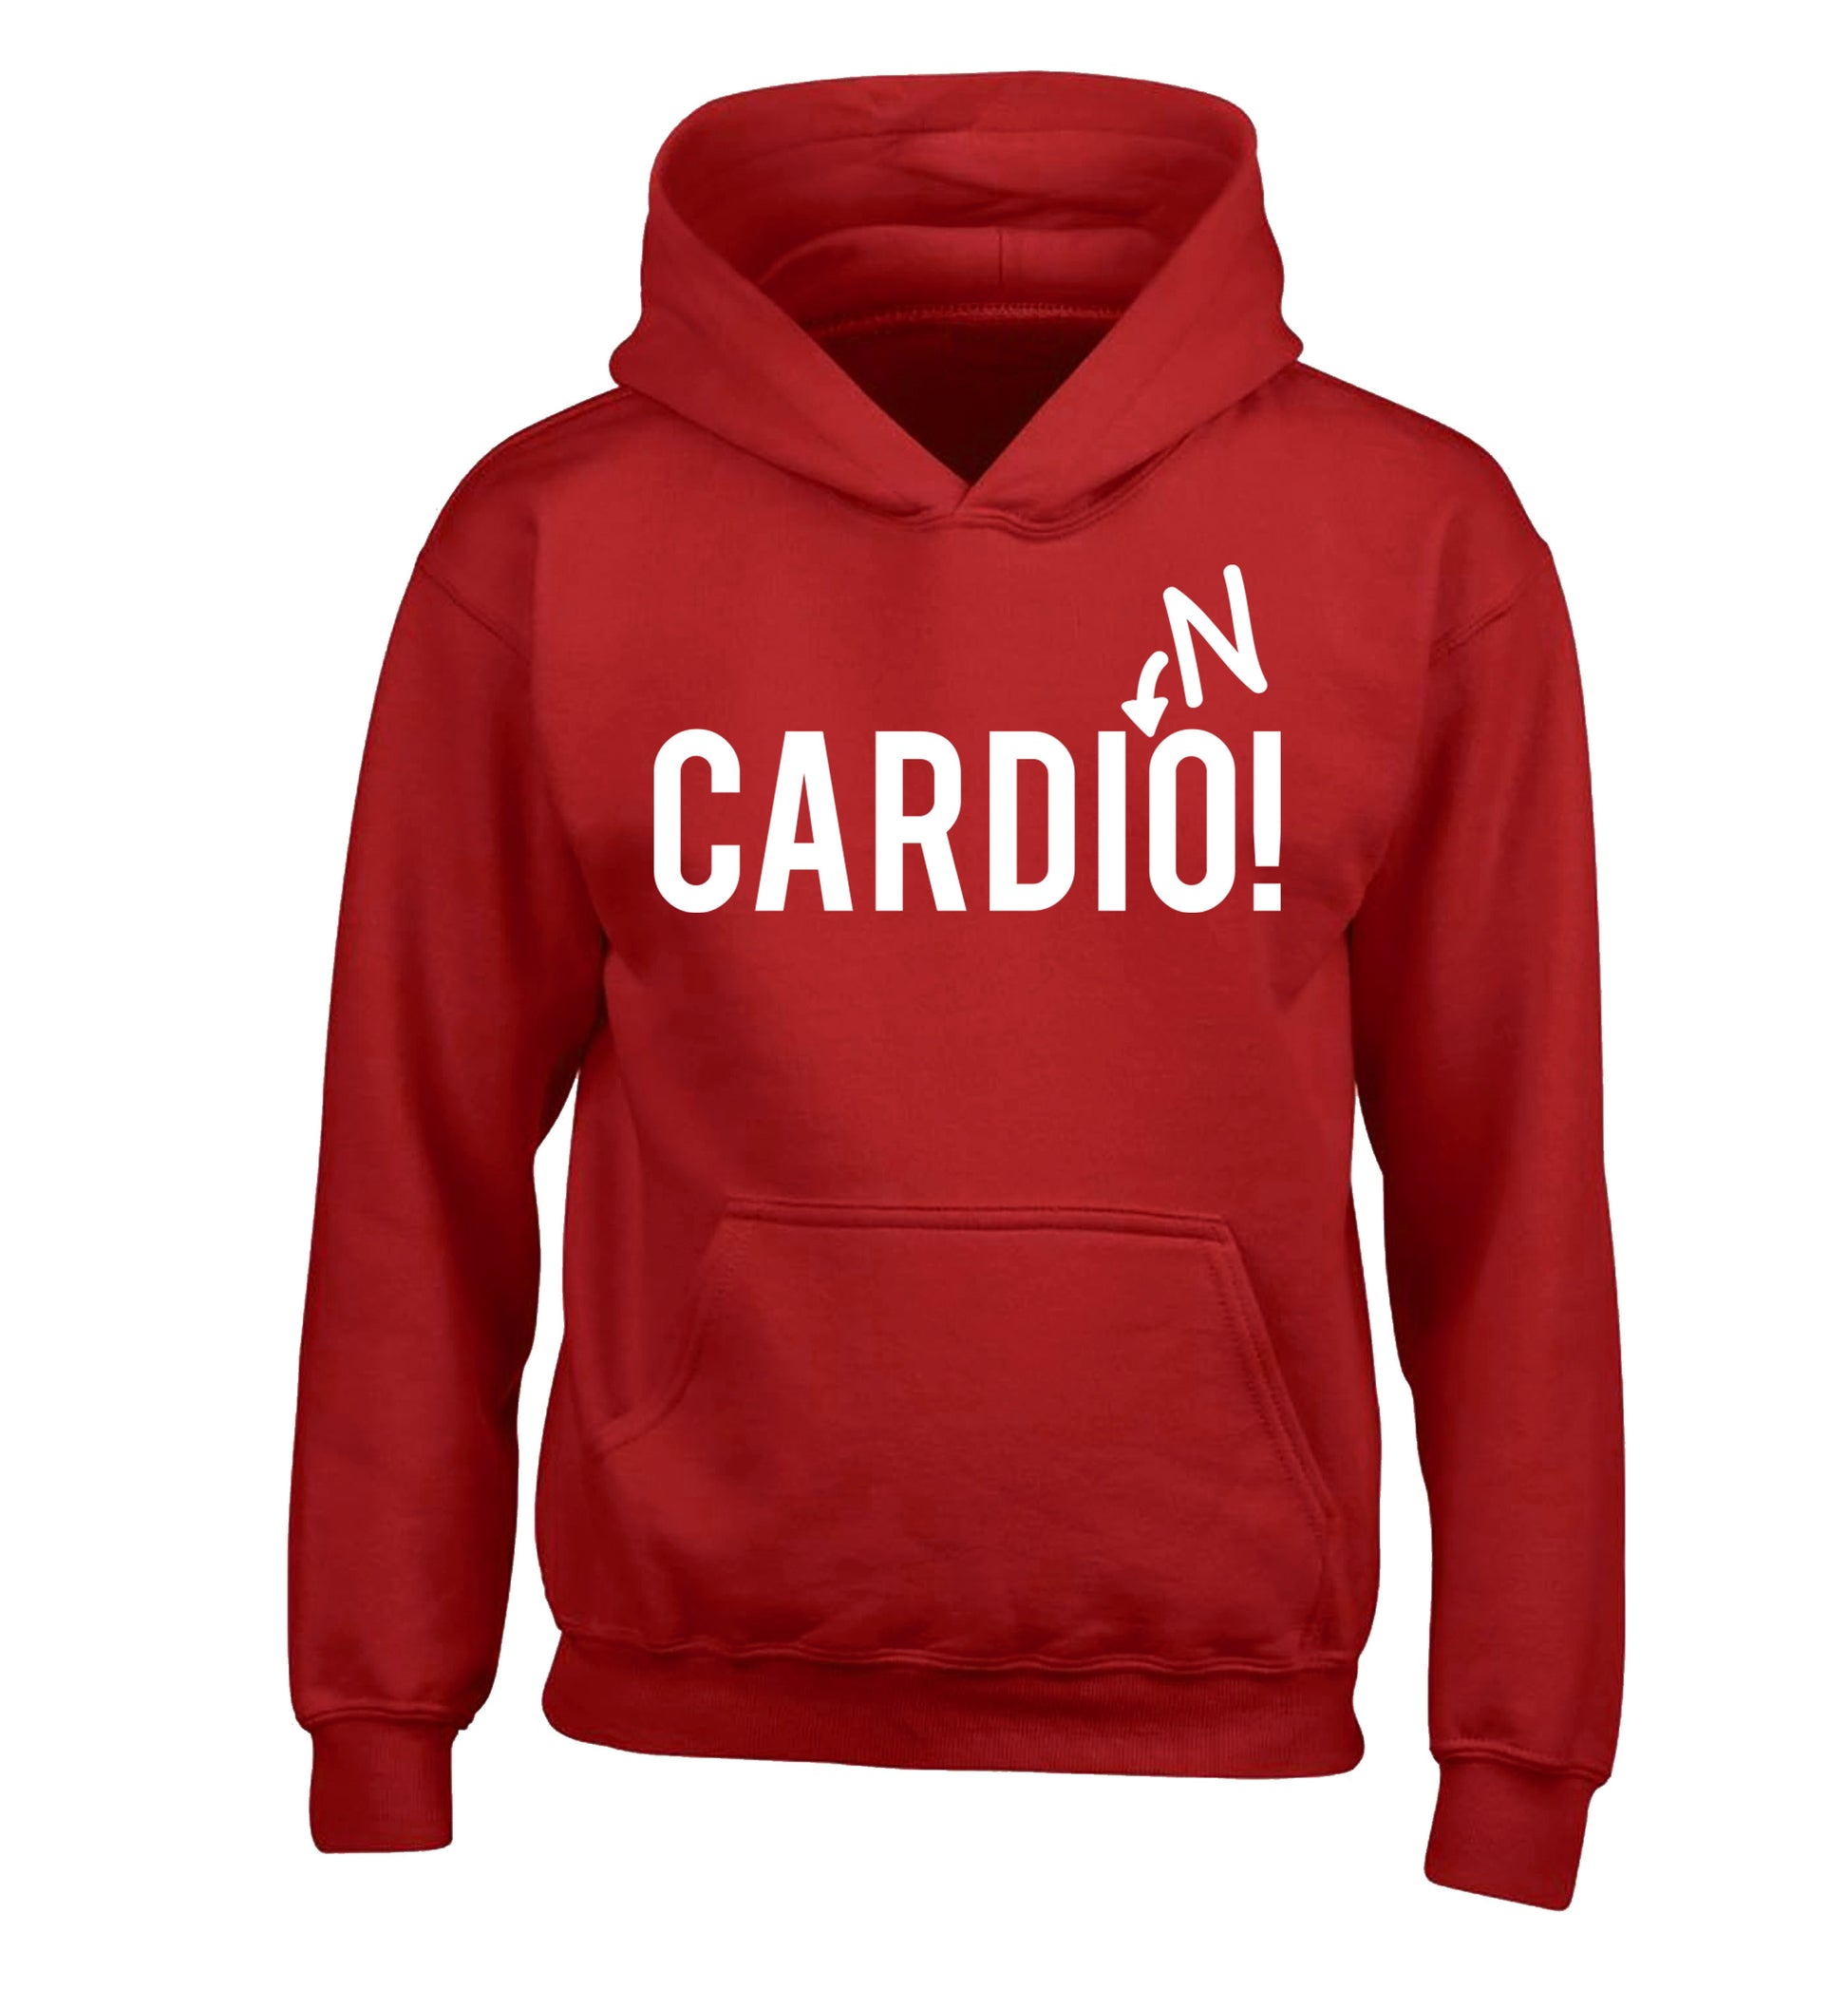 Cardino children's red hoodie 12-14 Years